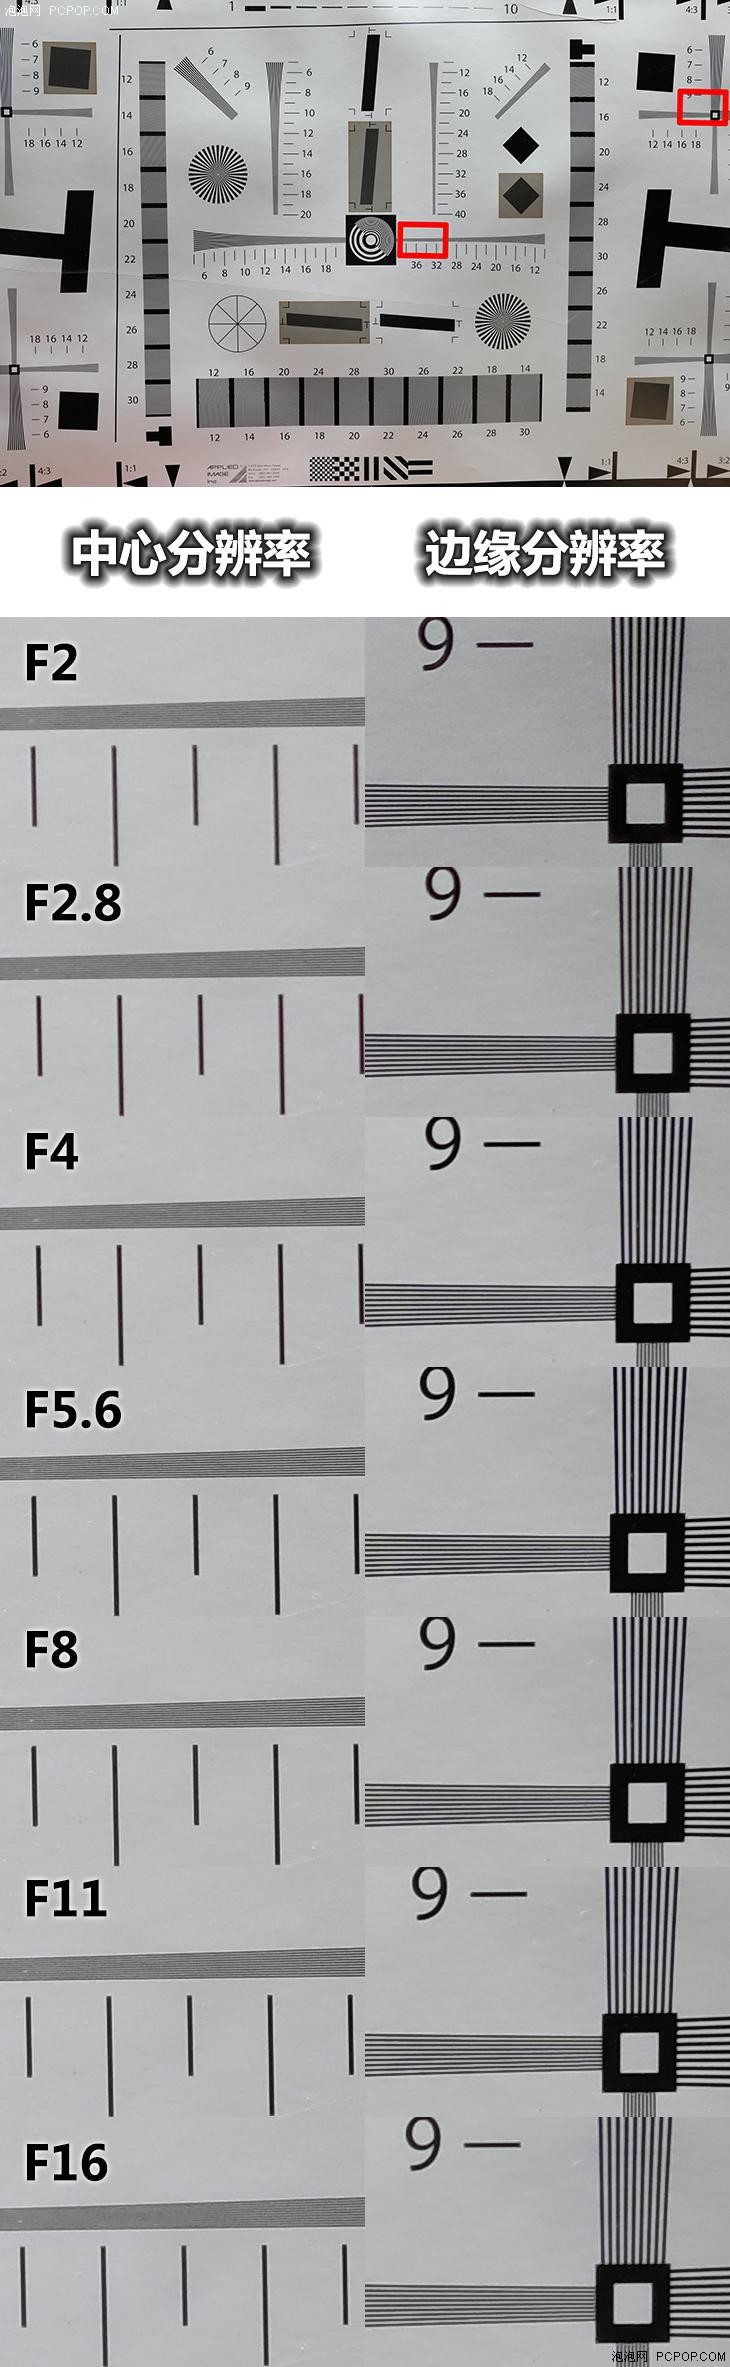 精巧耐用高质 富士XF23mmF2 R WR评测 